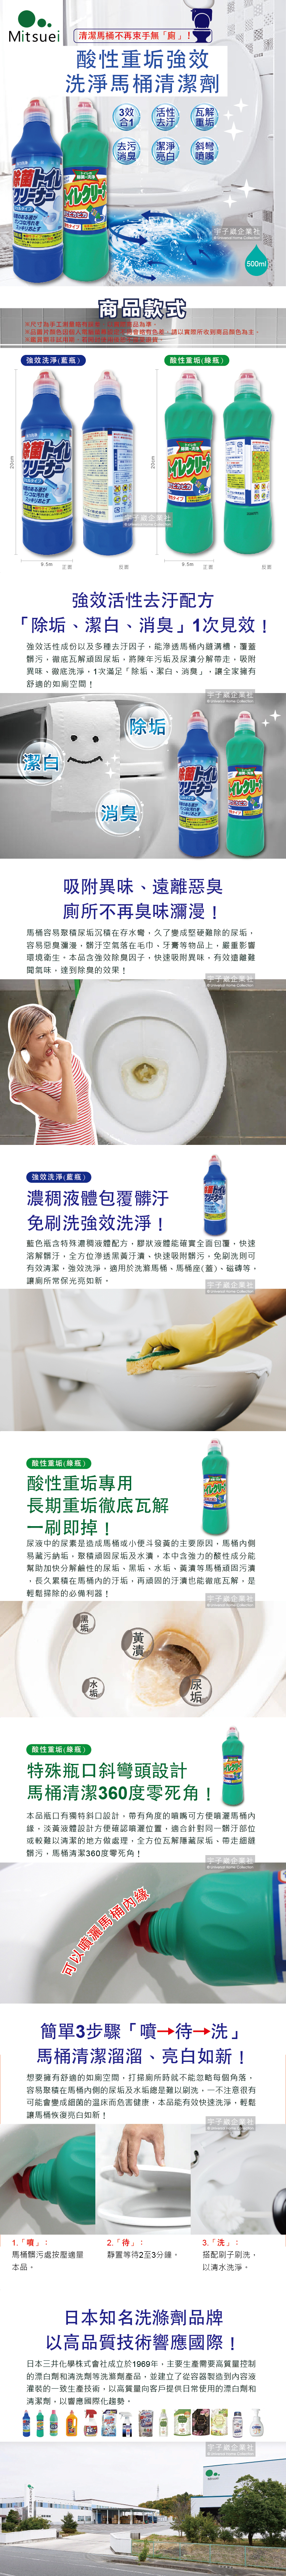 日本MITSUEI美淨易-酸性重垢強效洗淨馬桶清潔劑介紹圖